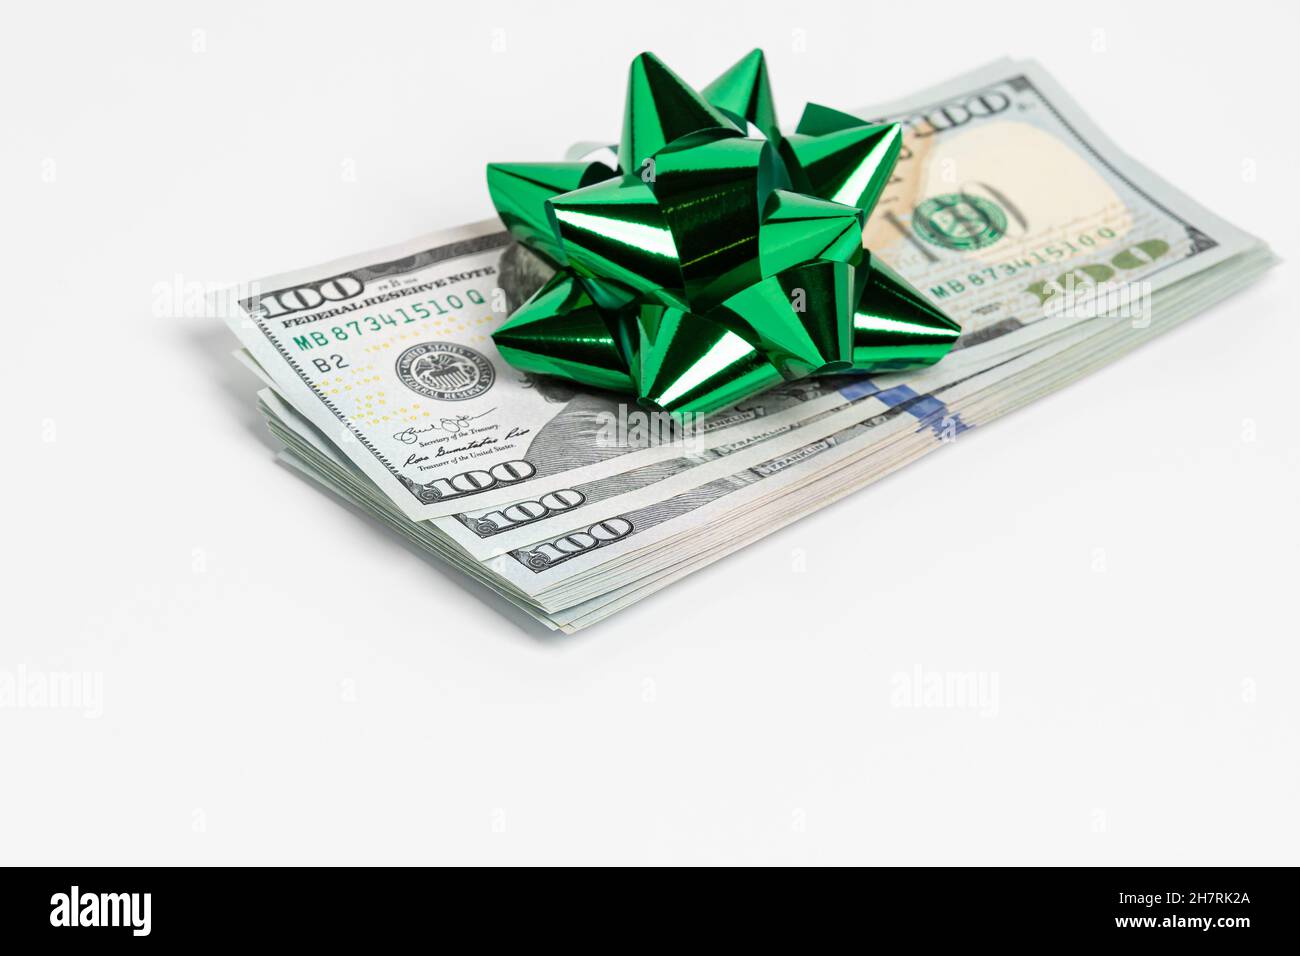 Cadeau en argent comptant de billets de 100 $ avec noeud vert.Concept de la taxe sur les cadeaux, du don de bienfaisance et du cadeau de fête. Banque D'Images